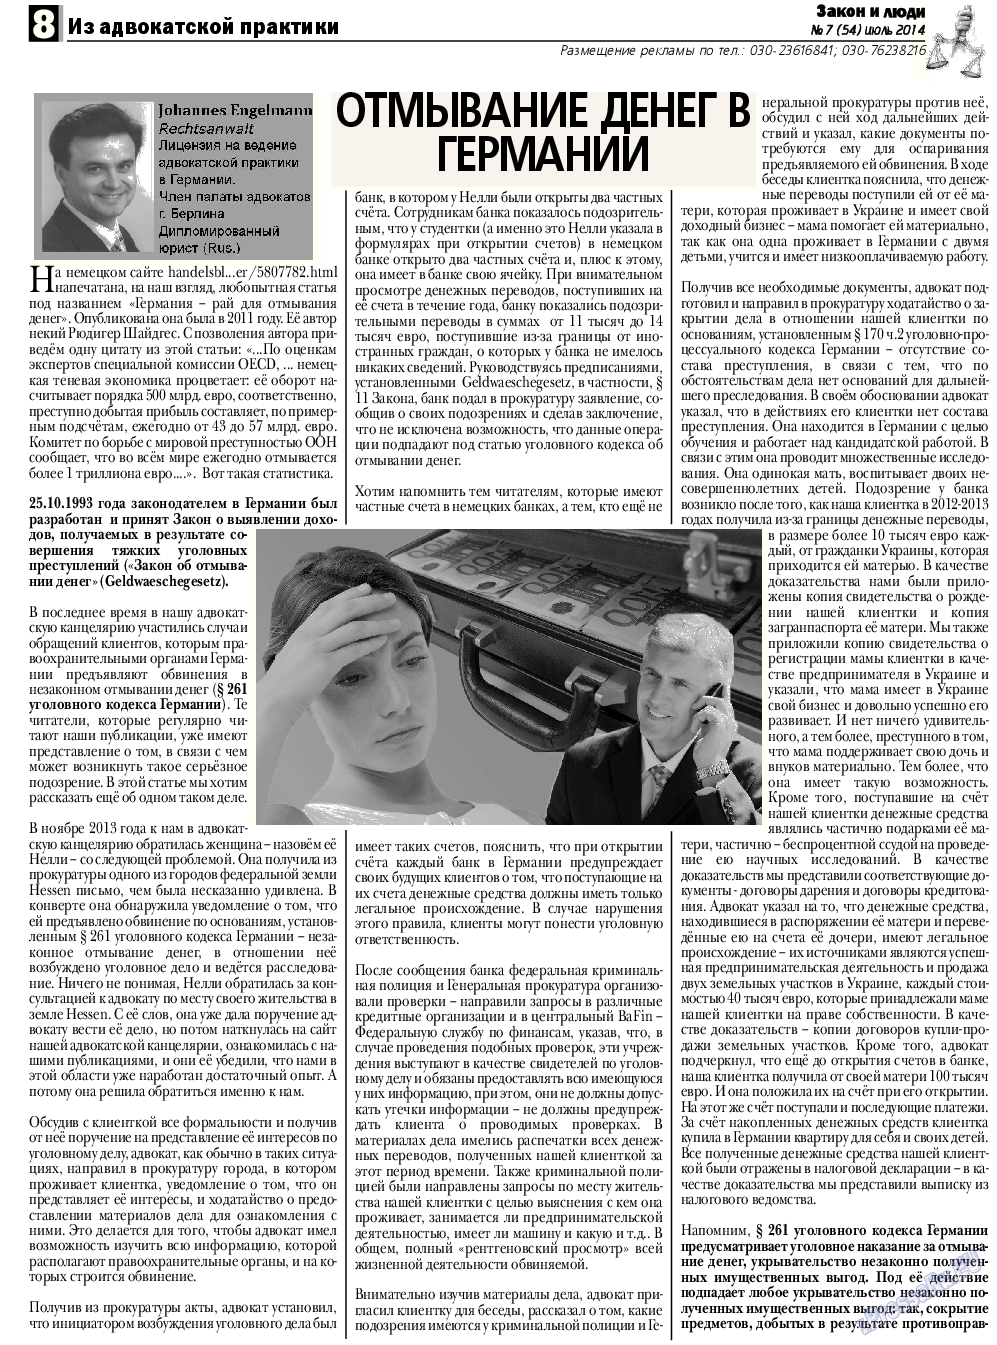 Закон и люди, газета. 2014 №7 стр.8